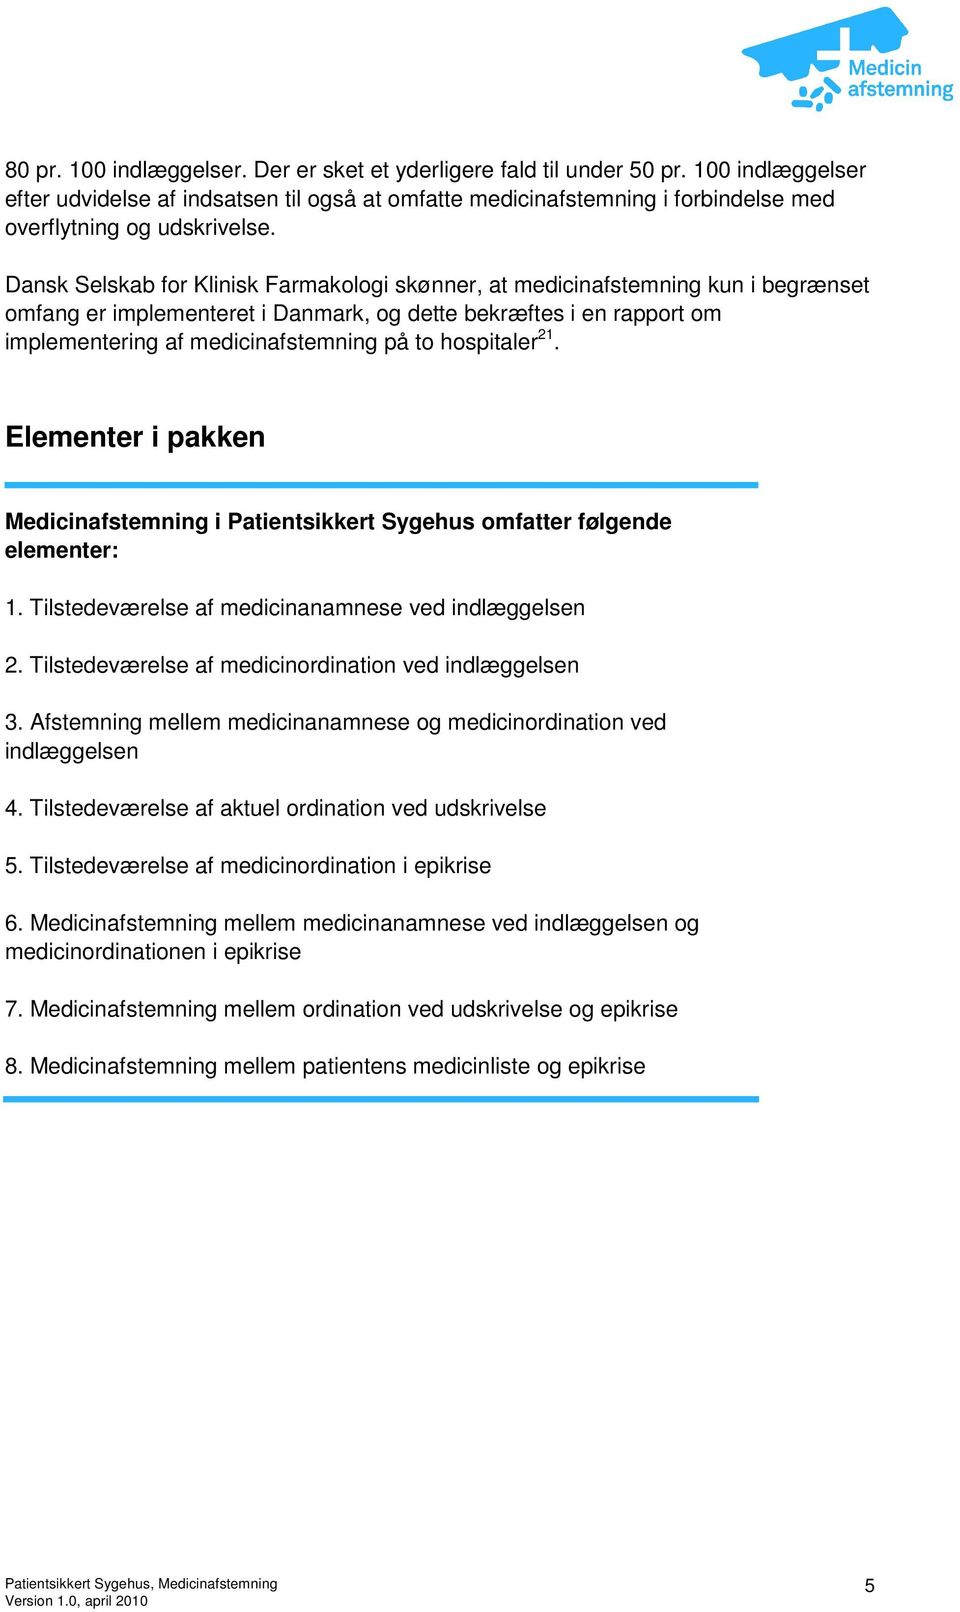 Dansk Selskab for Klinisk Farmakologi skønner, at medicinafstemning kun i begrænset omfang er implementeret i Danmark, og dette bekræftes i en rapport om implementering af medicinafstemning på to